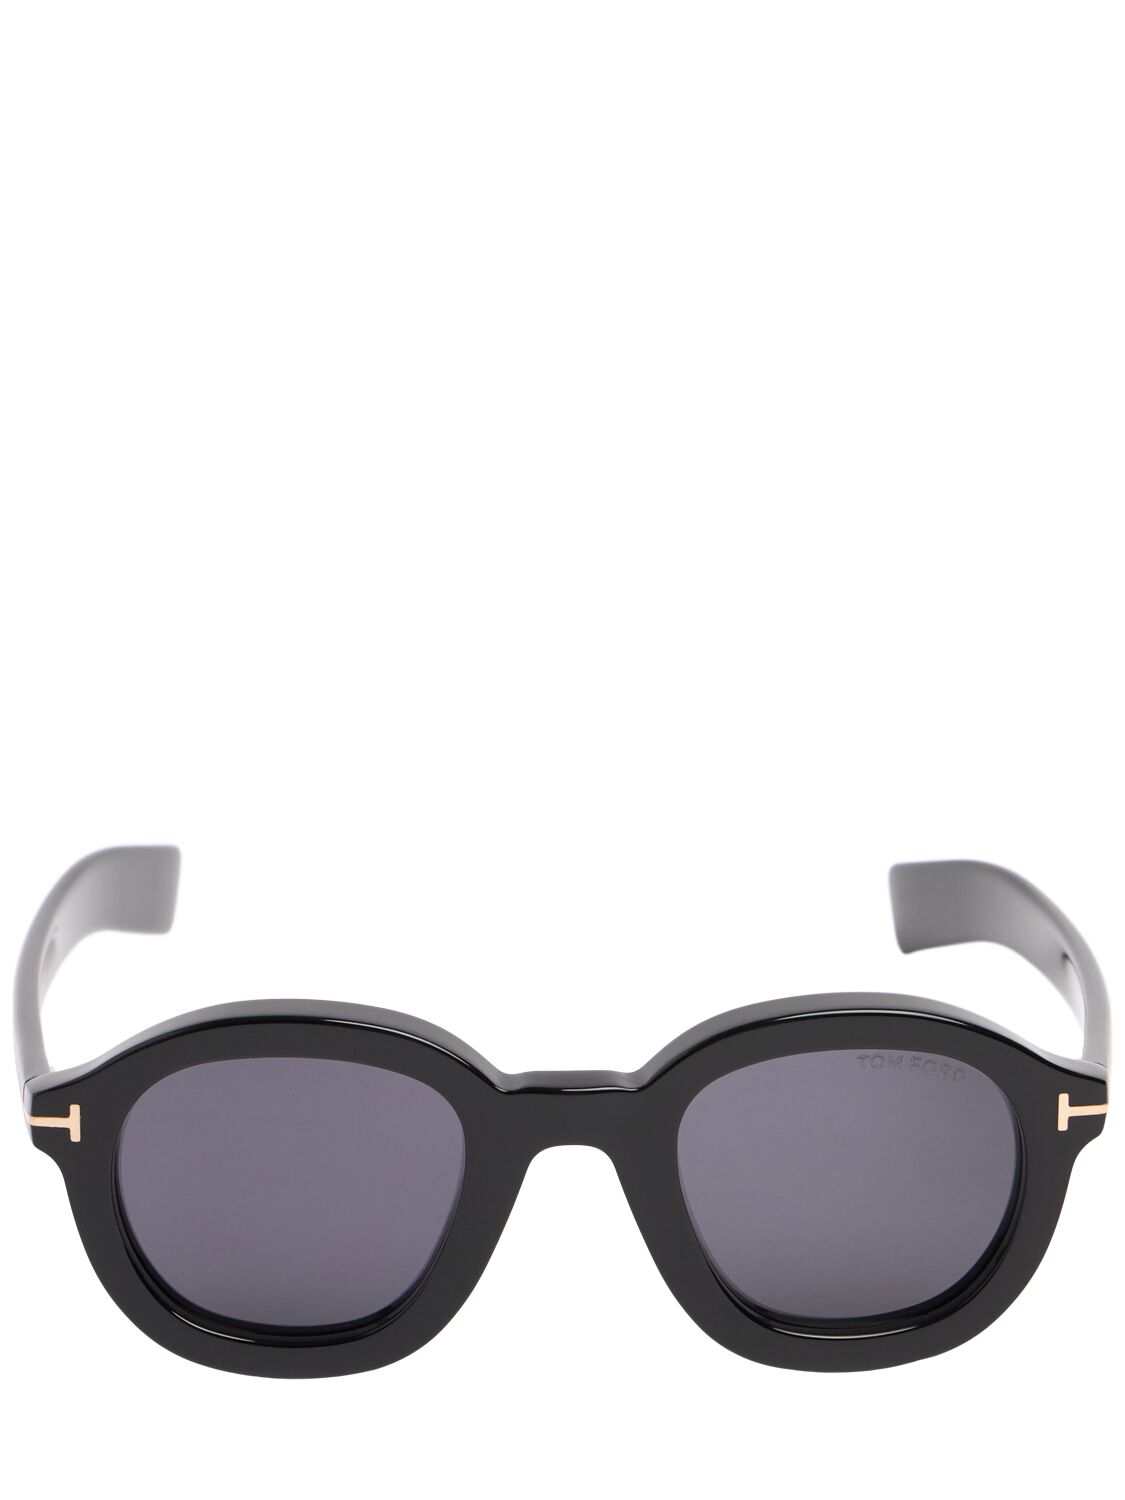 Image of Raffa Acetate Sunglasses